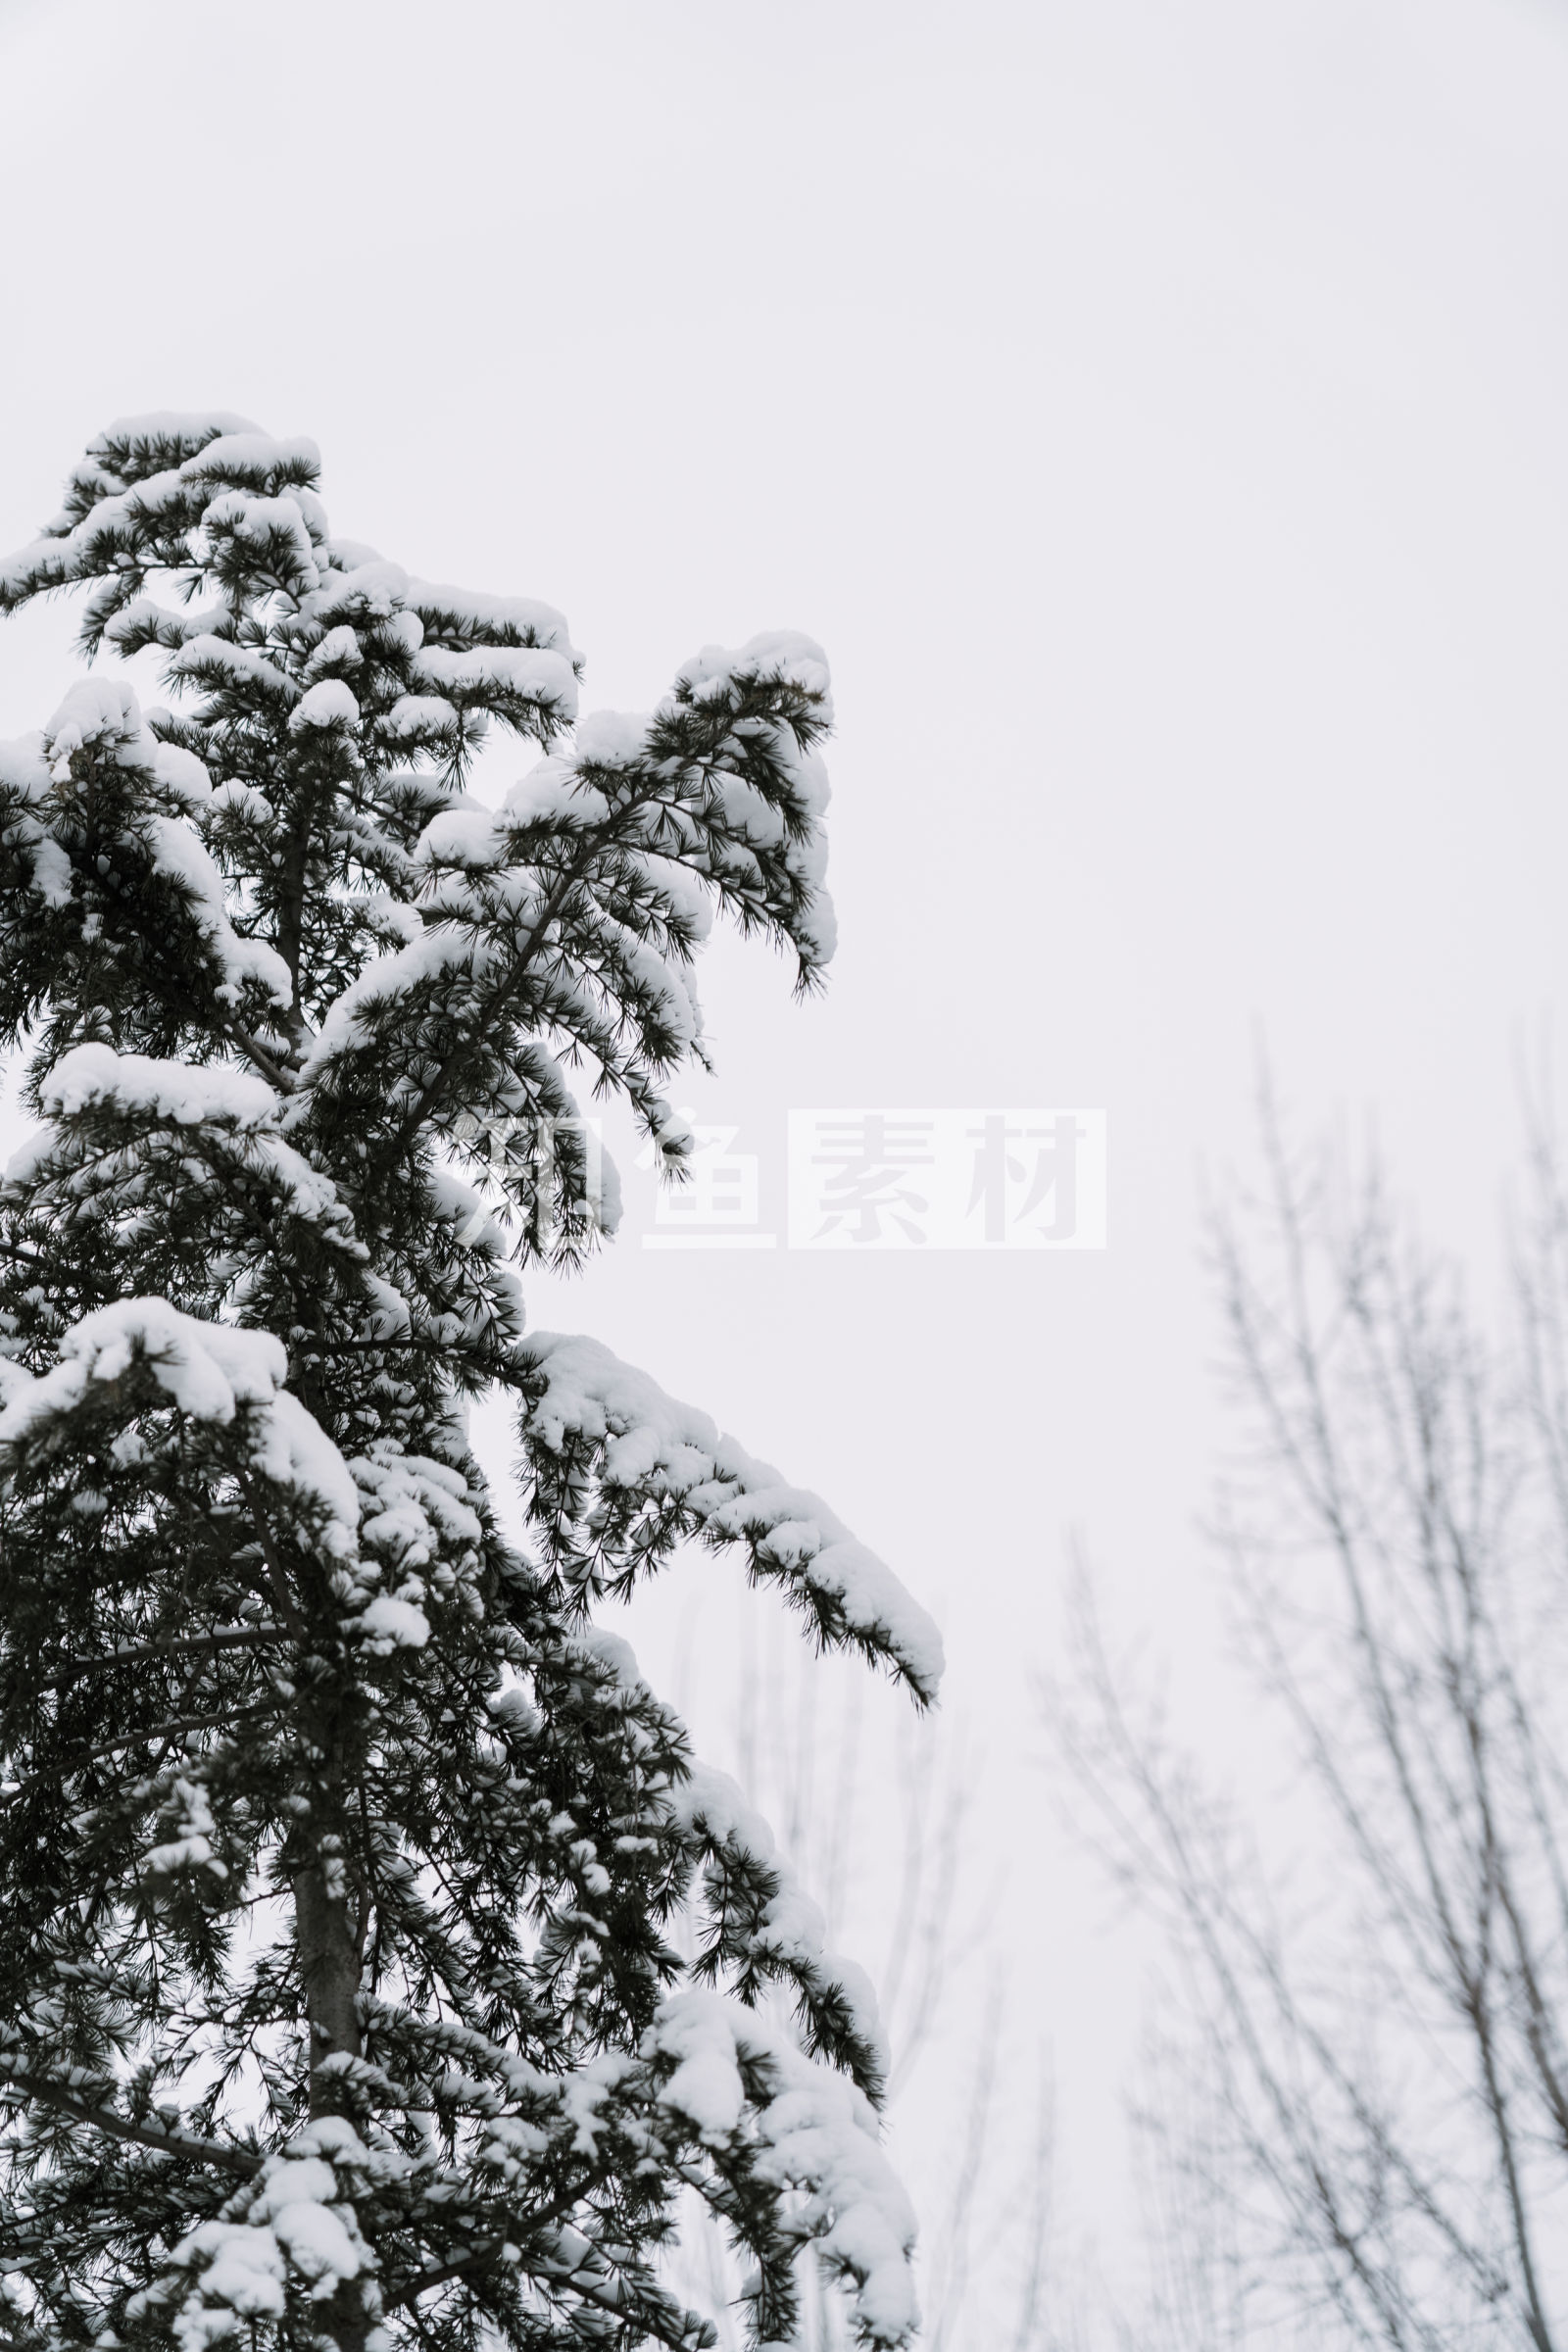 唯美冬至雪景带字图片手机壁纸_手机壁纸_mm4000图片大全